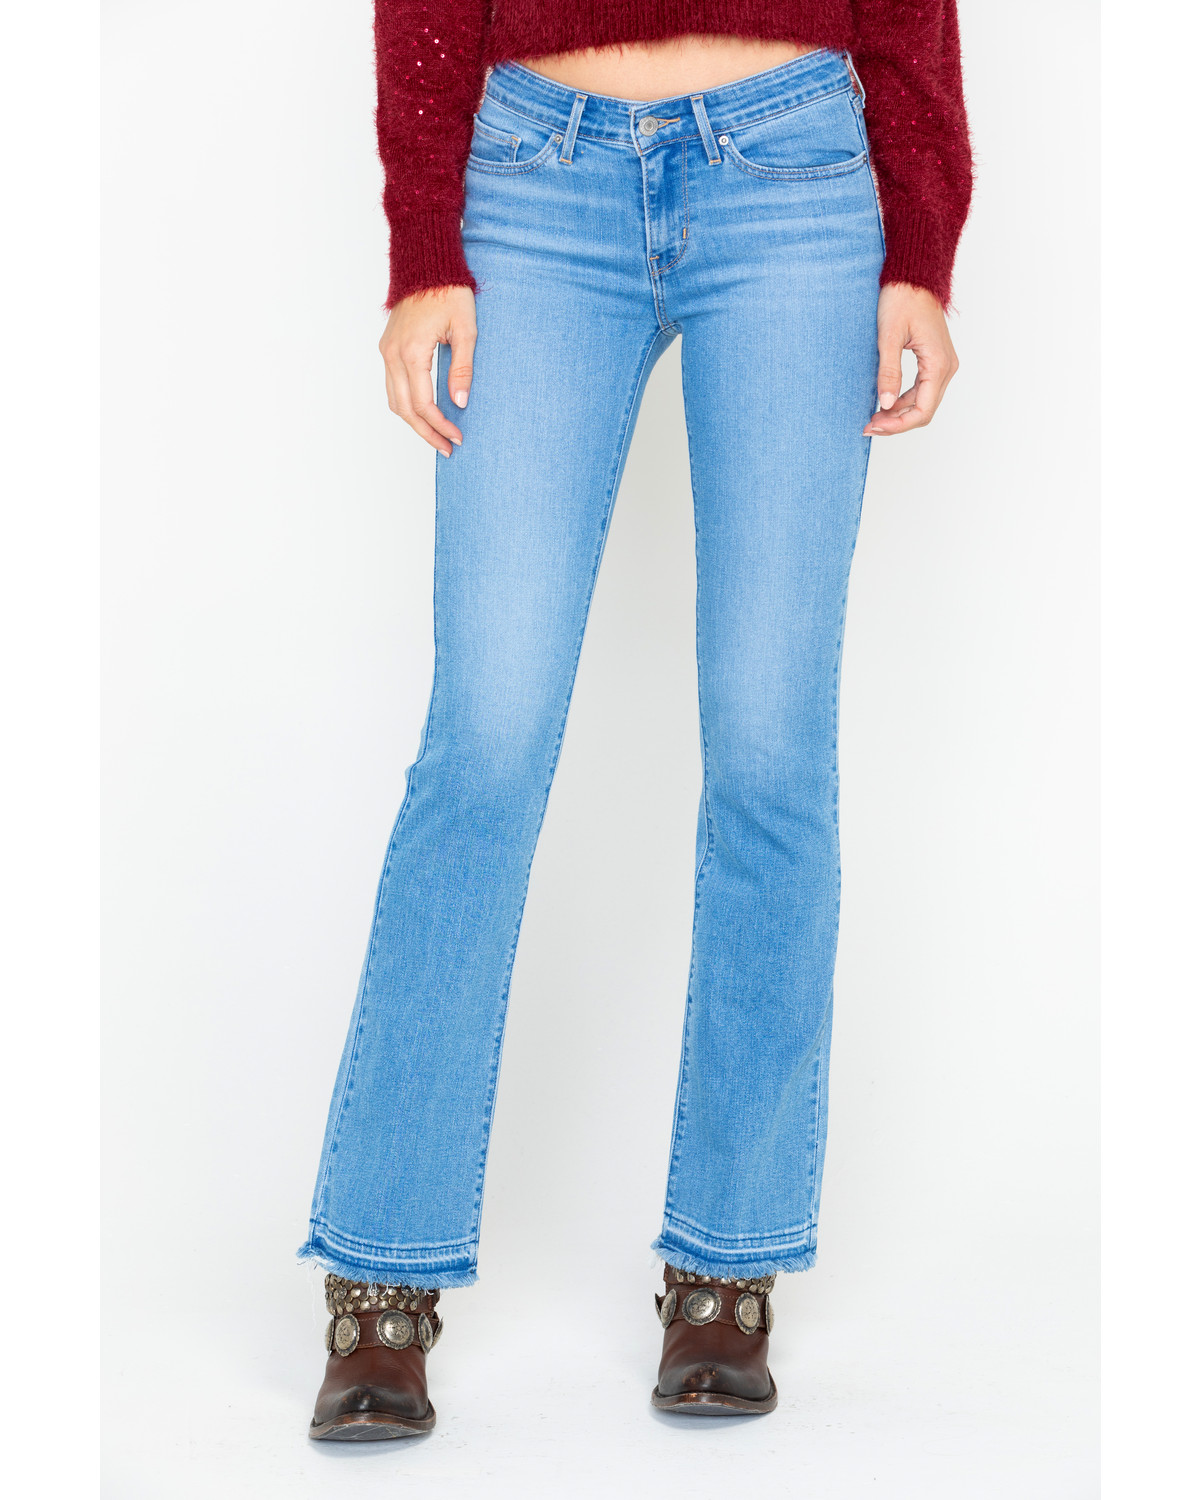 levi's vintage bootcut jeans